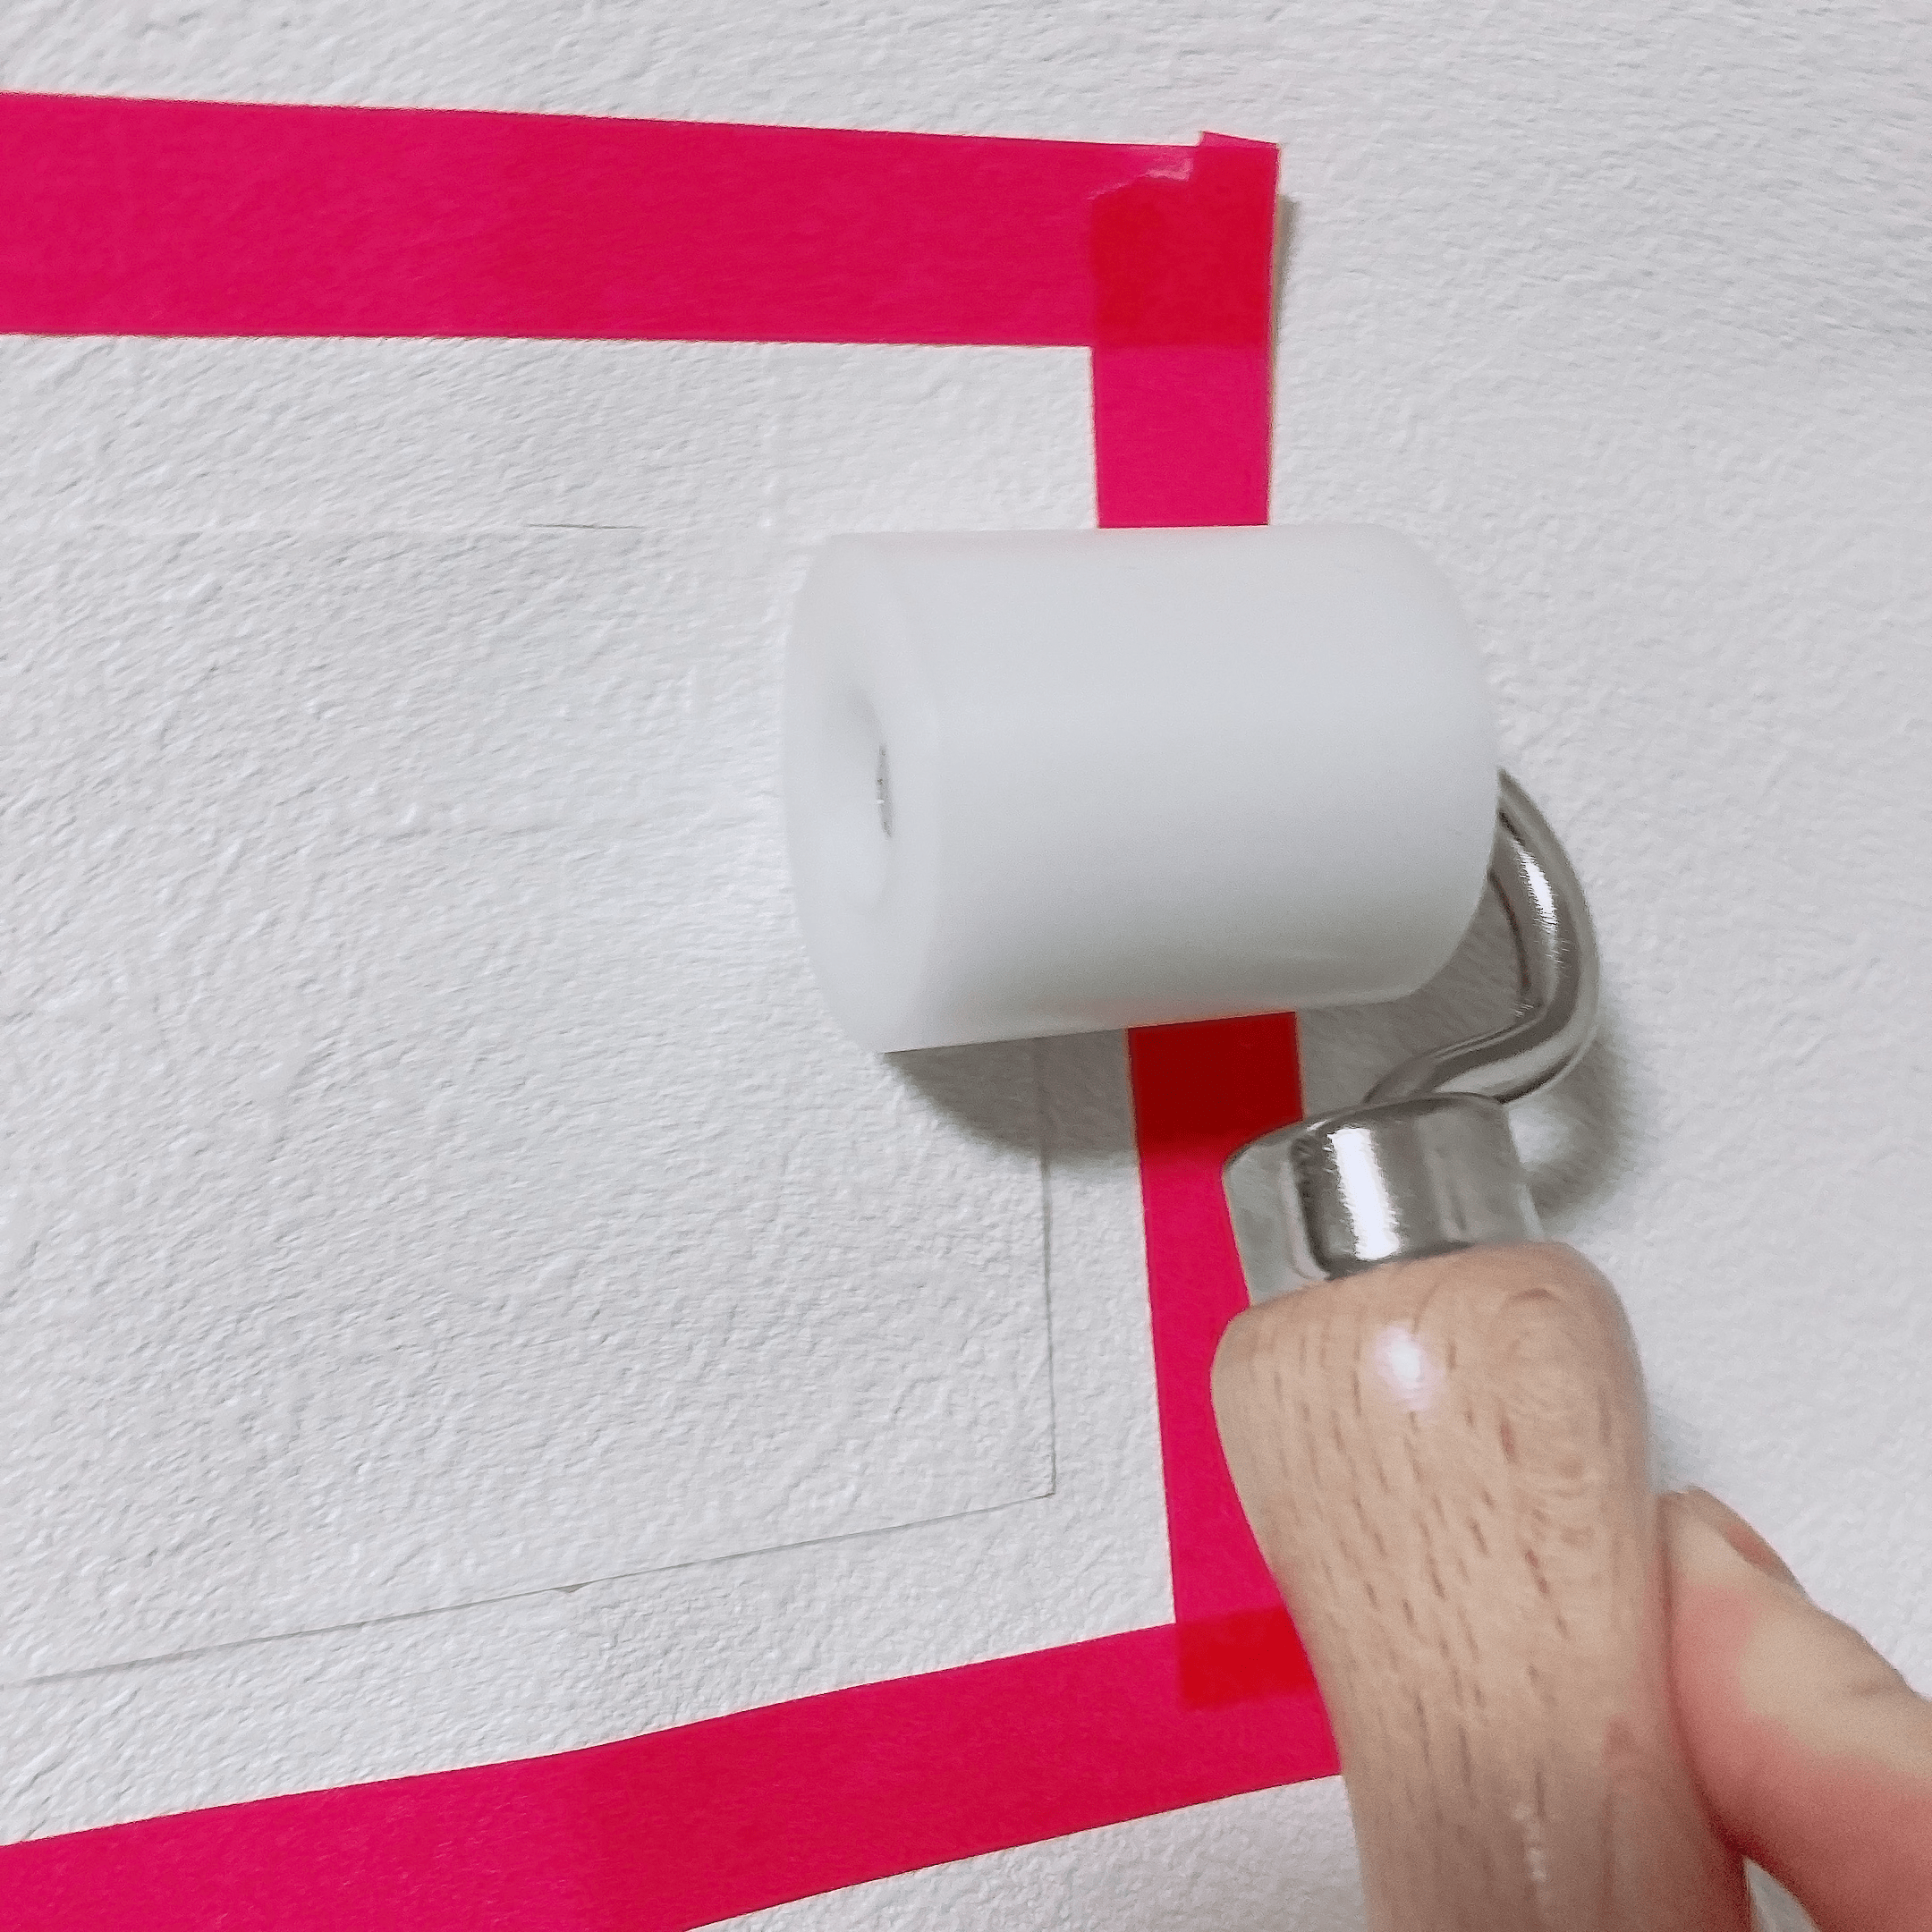 補修用の壁紙と元の壁紙の境目をローラーで押さえて、補修部分全体をしっかり圧着します。